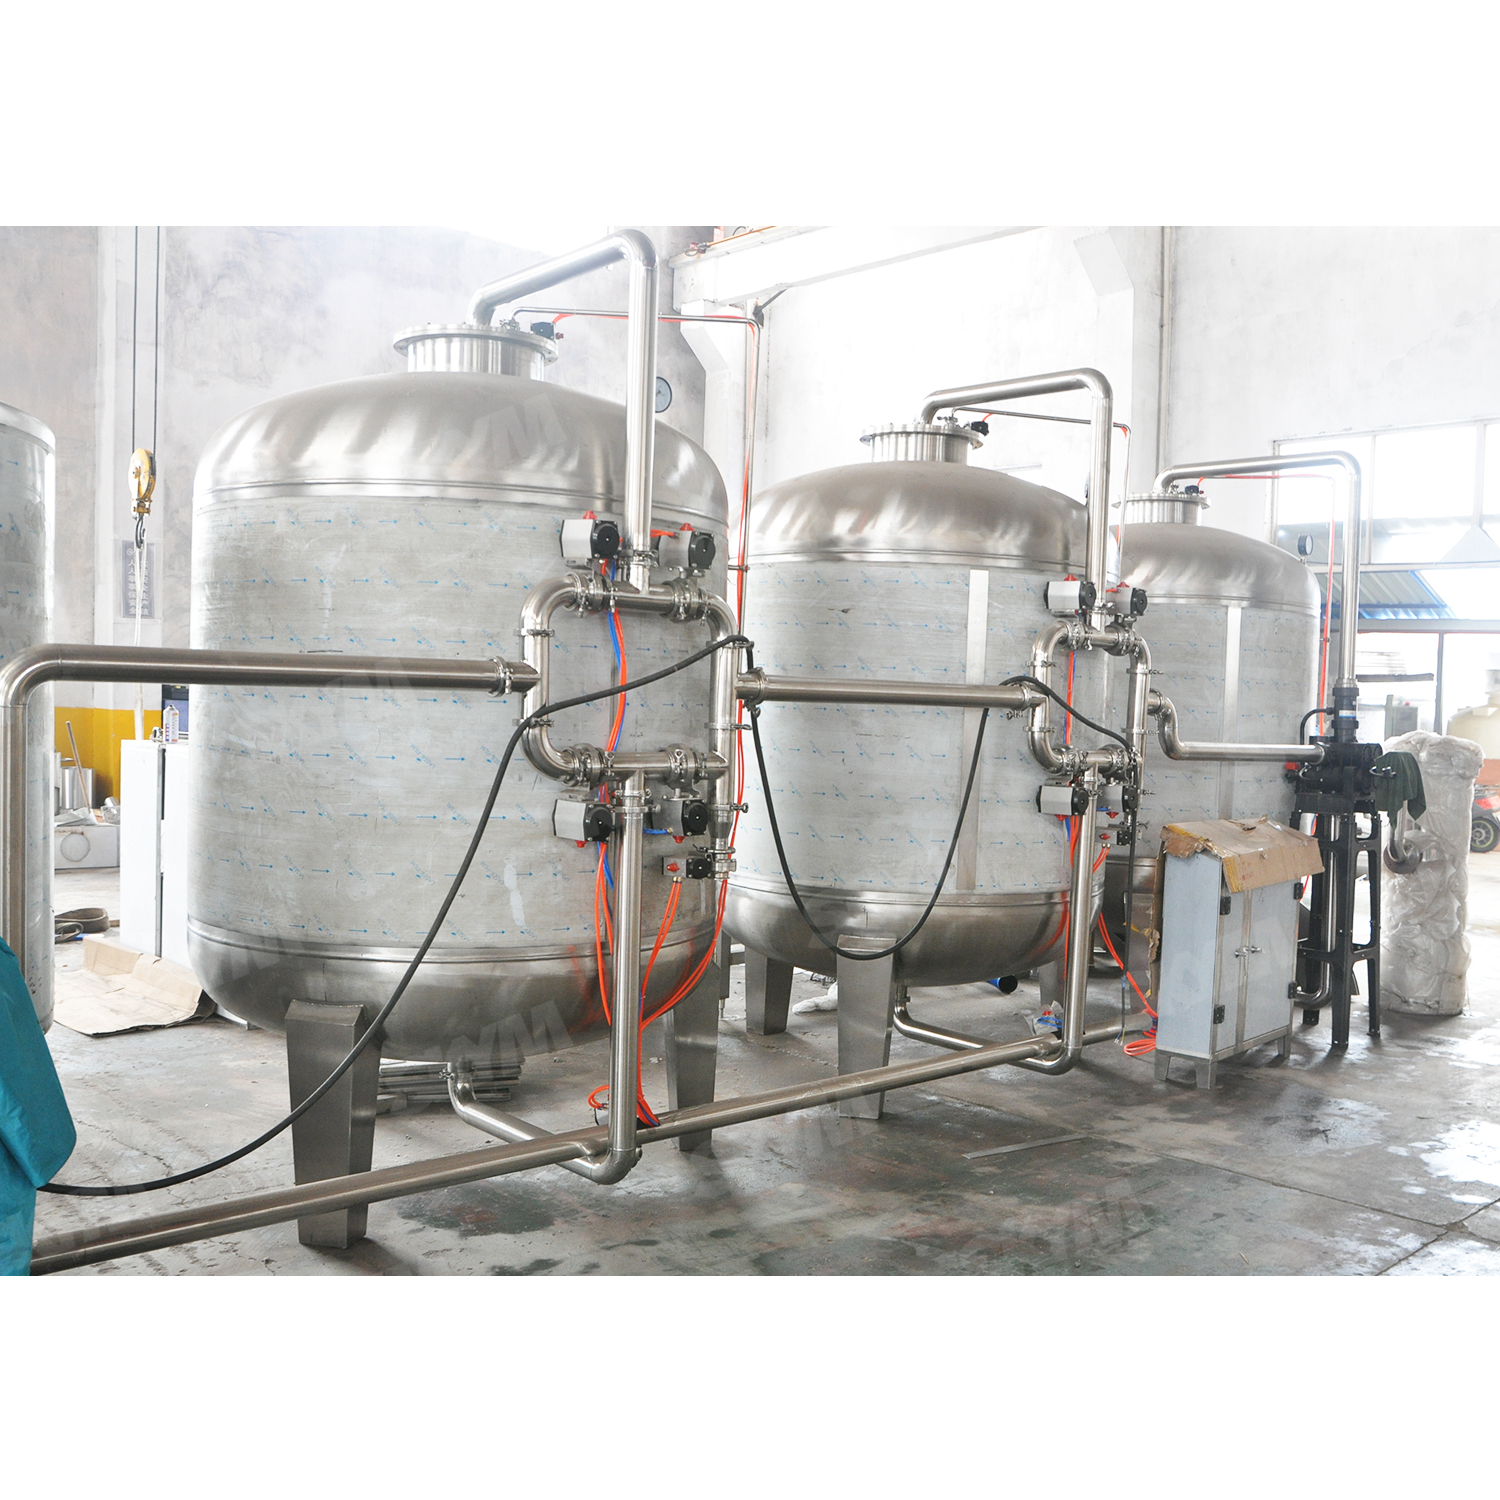 Équipement de traitement de l'eau pure industrielle RO 20t